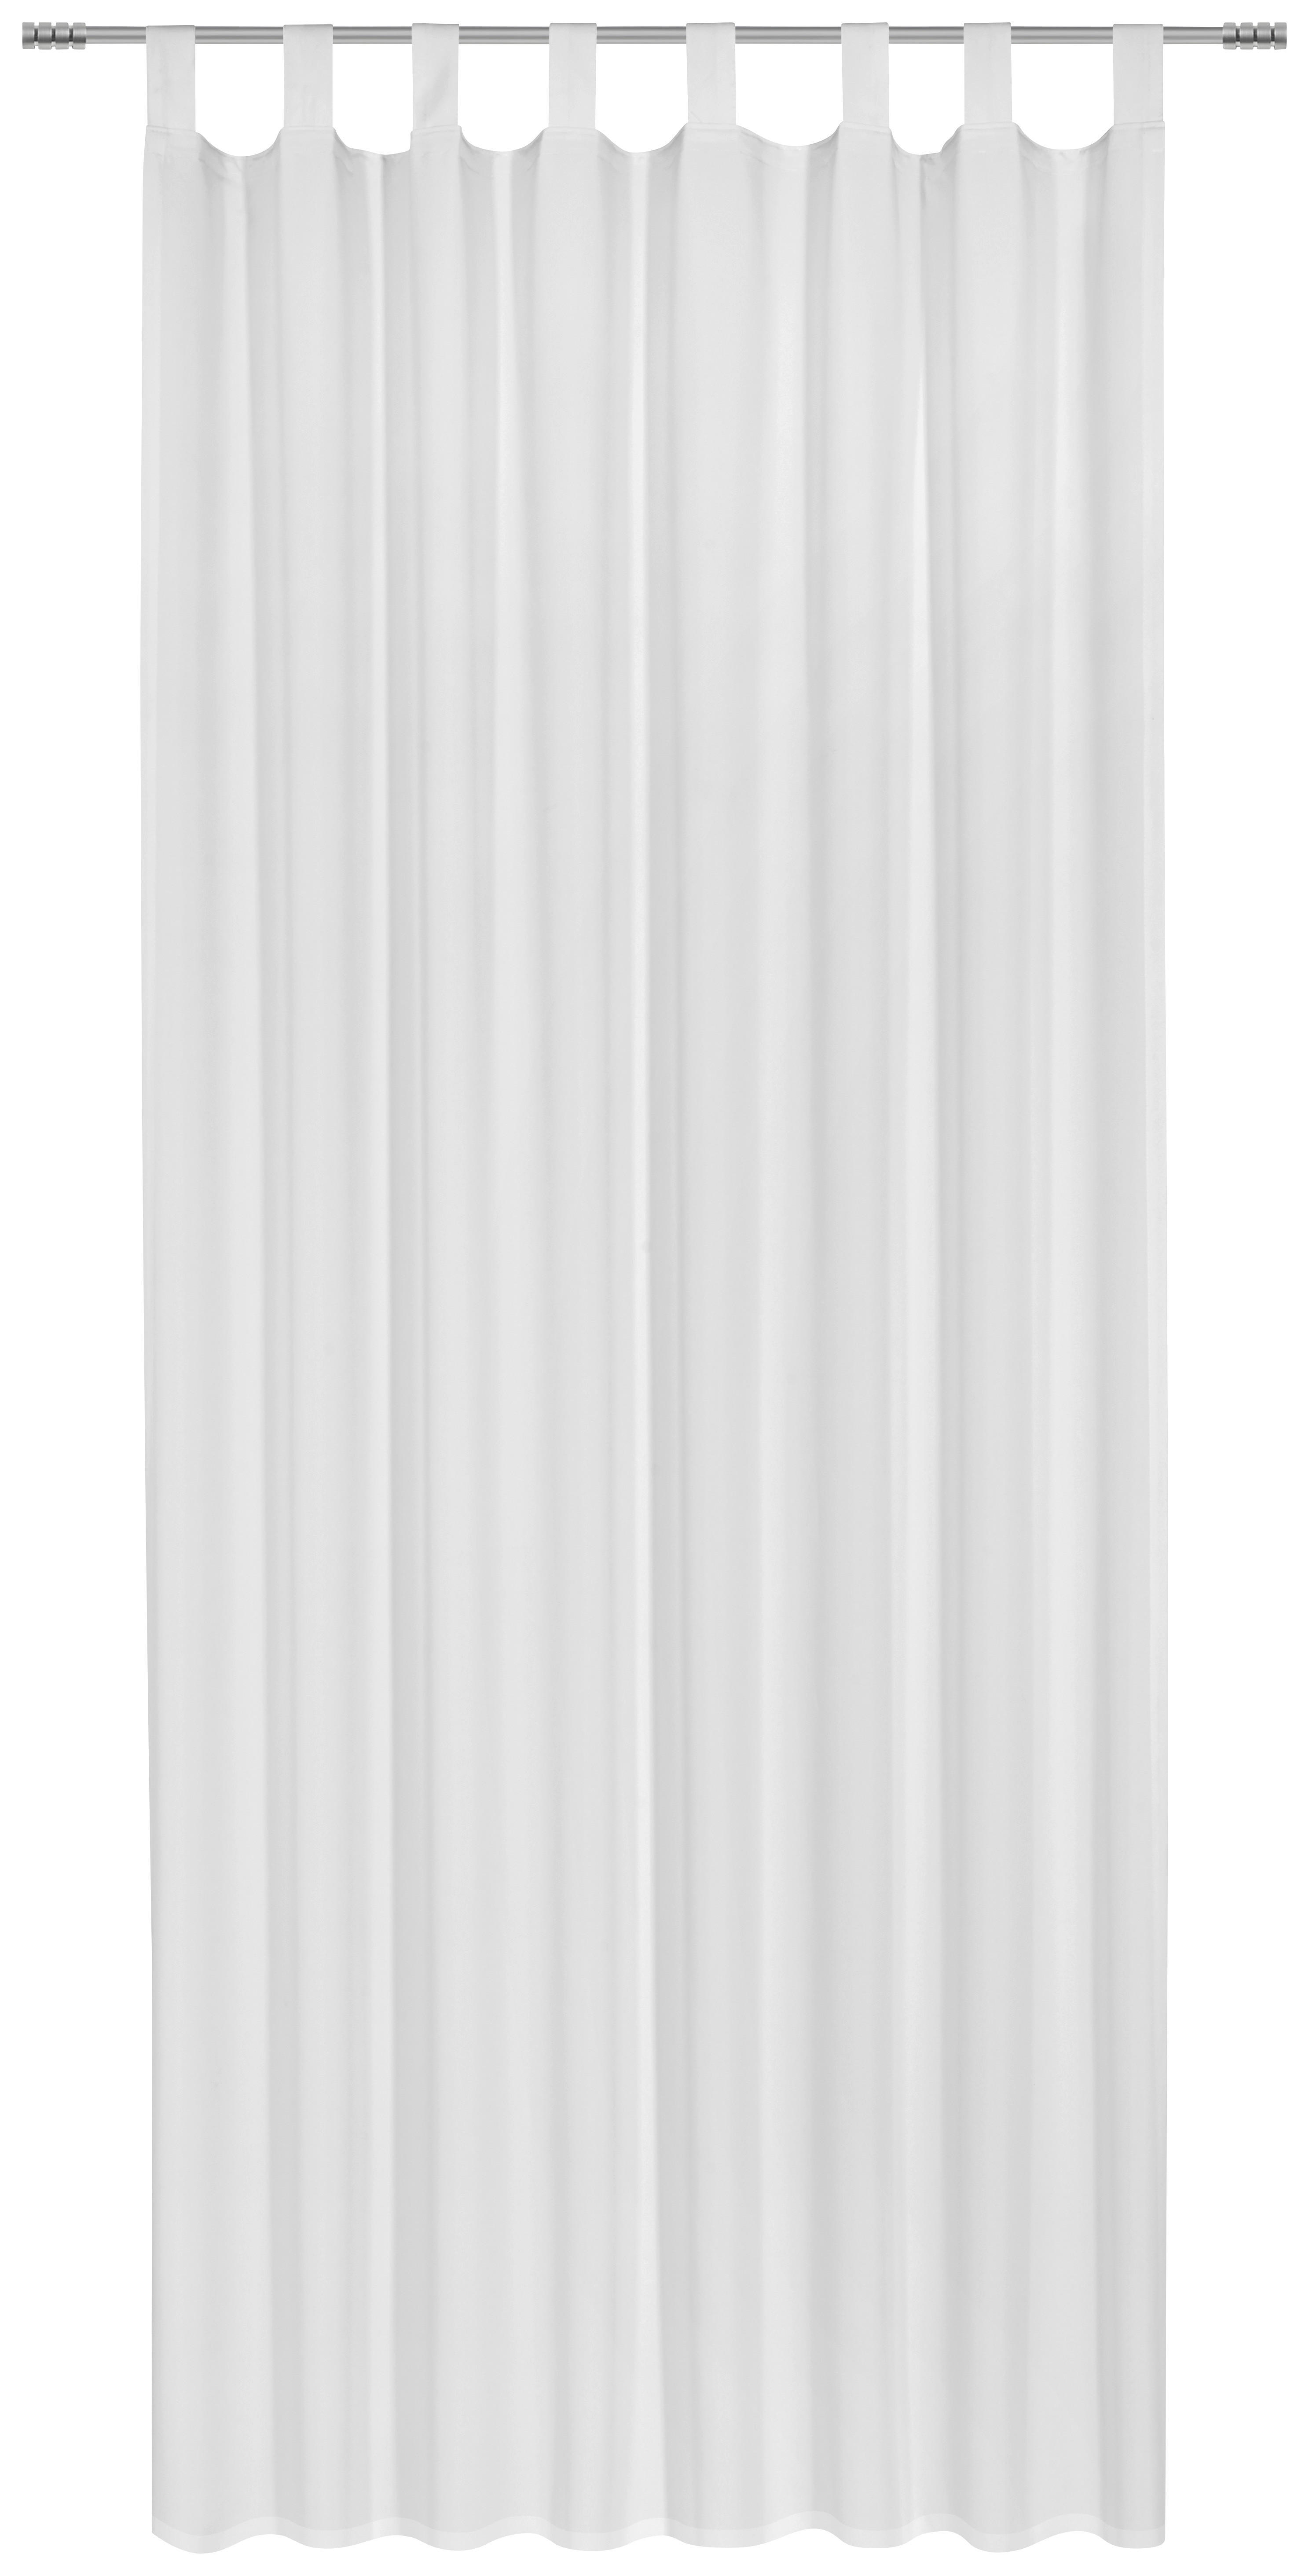 OUTDOOR SCHLAUFENSCHAL  blickdicht  140/300 cm   - Weiß, Basics, Textil (140/300cm) - Esposa